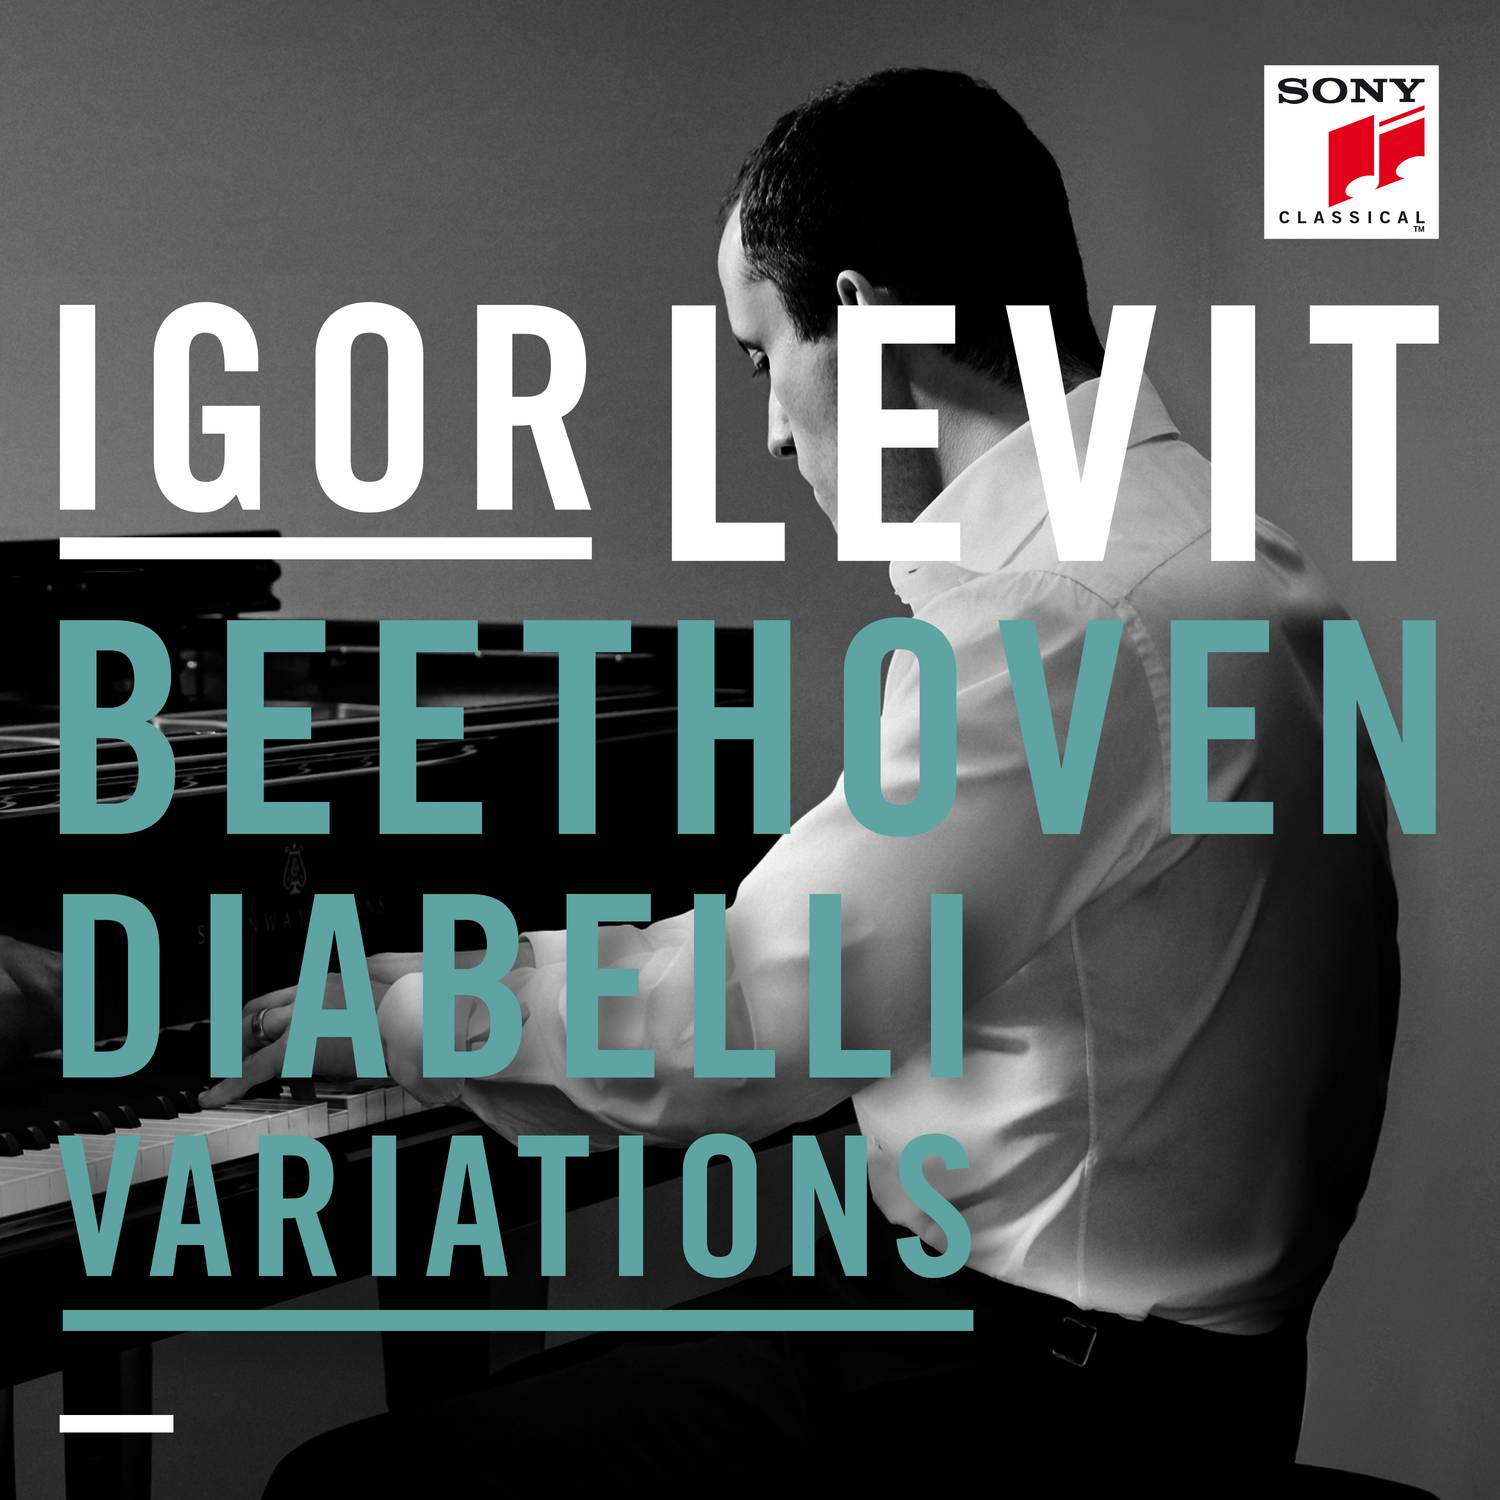 Diabelli Variations - 33 Variations on a Waltz by Anton Diabelli, Op. 120:Var. 20 - Andante